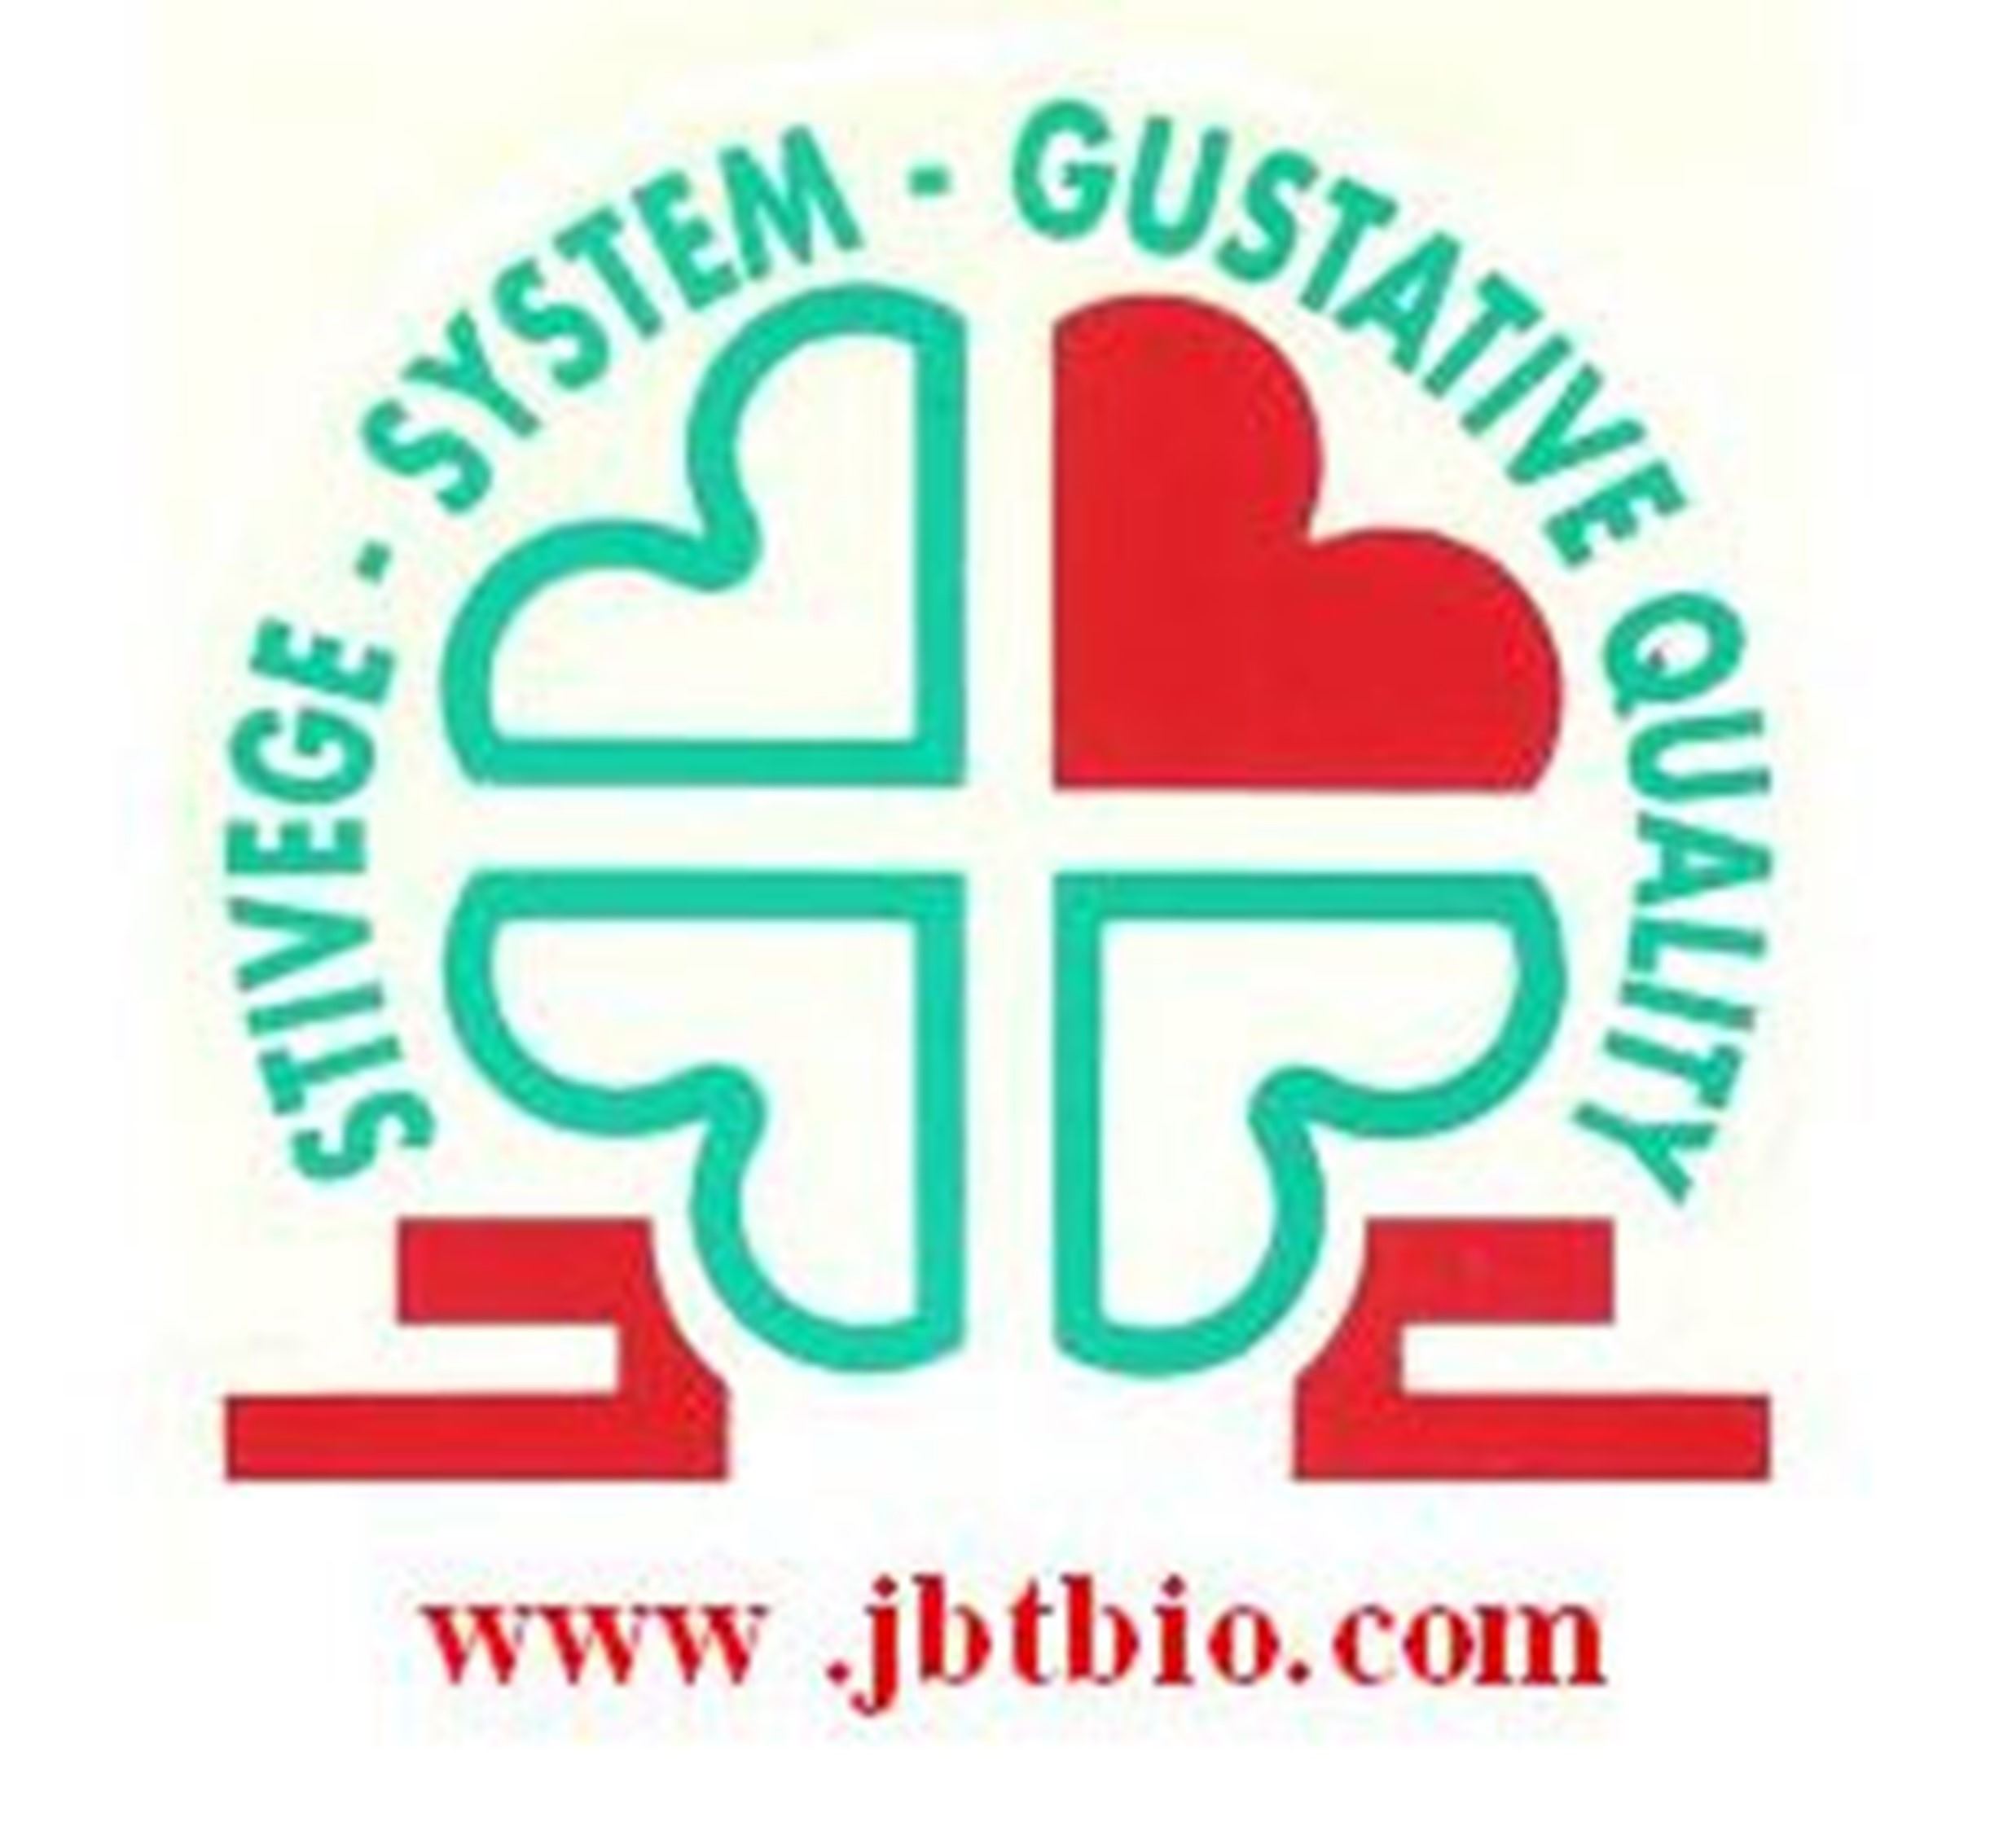 logo-system